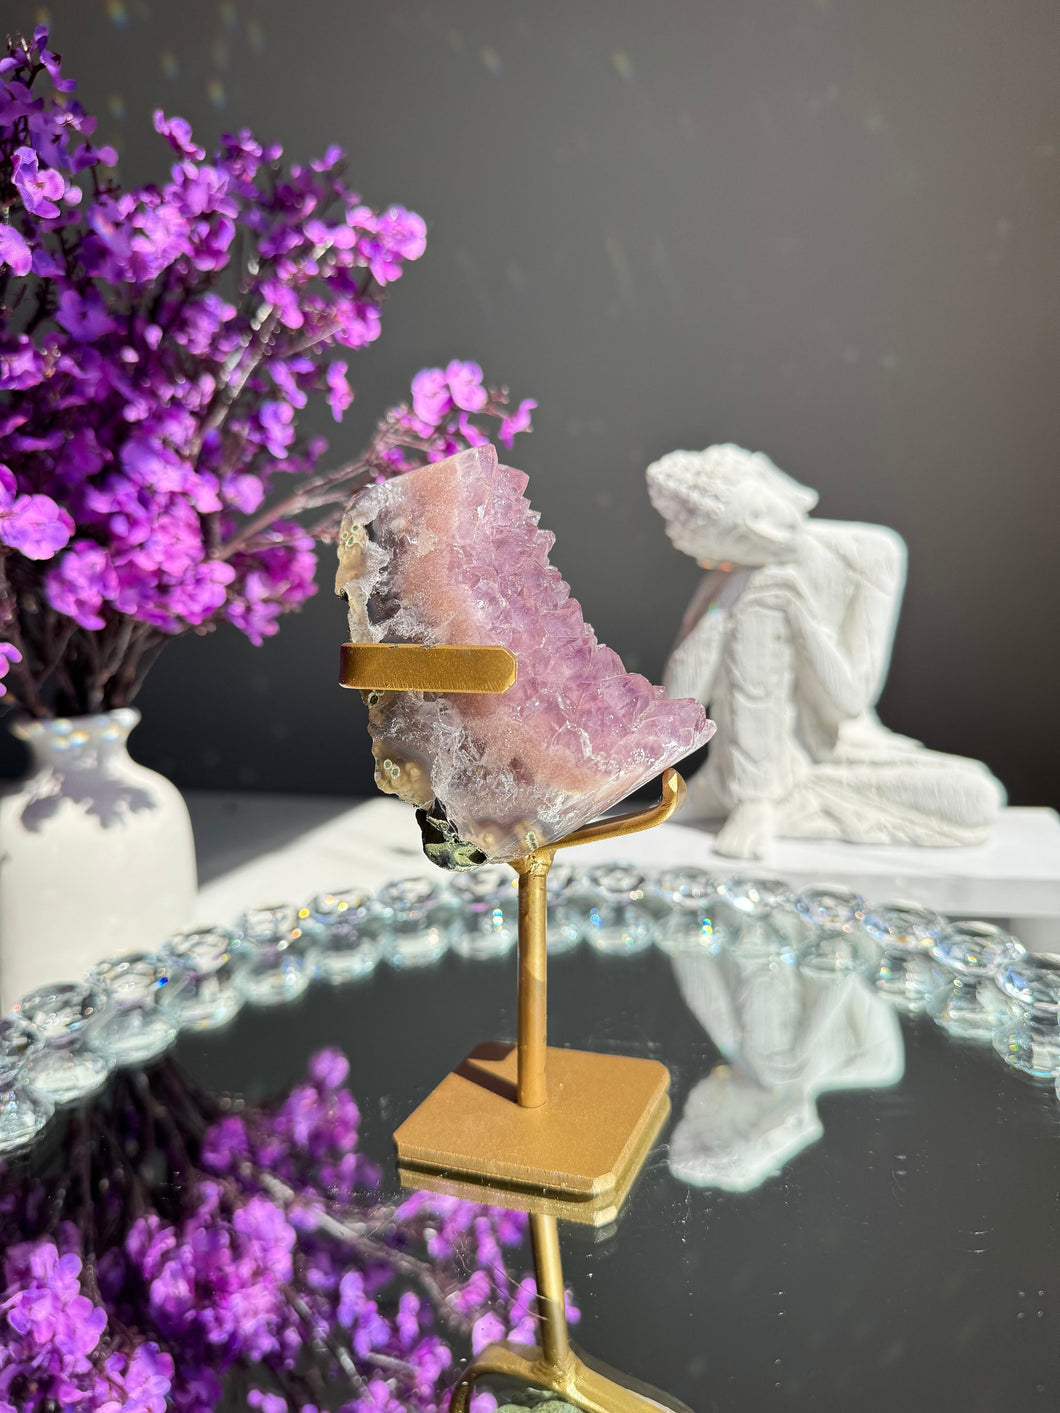 Druzy amethyst and pink Amethyst Freeform Healing crystals 2768